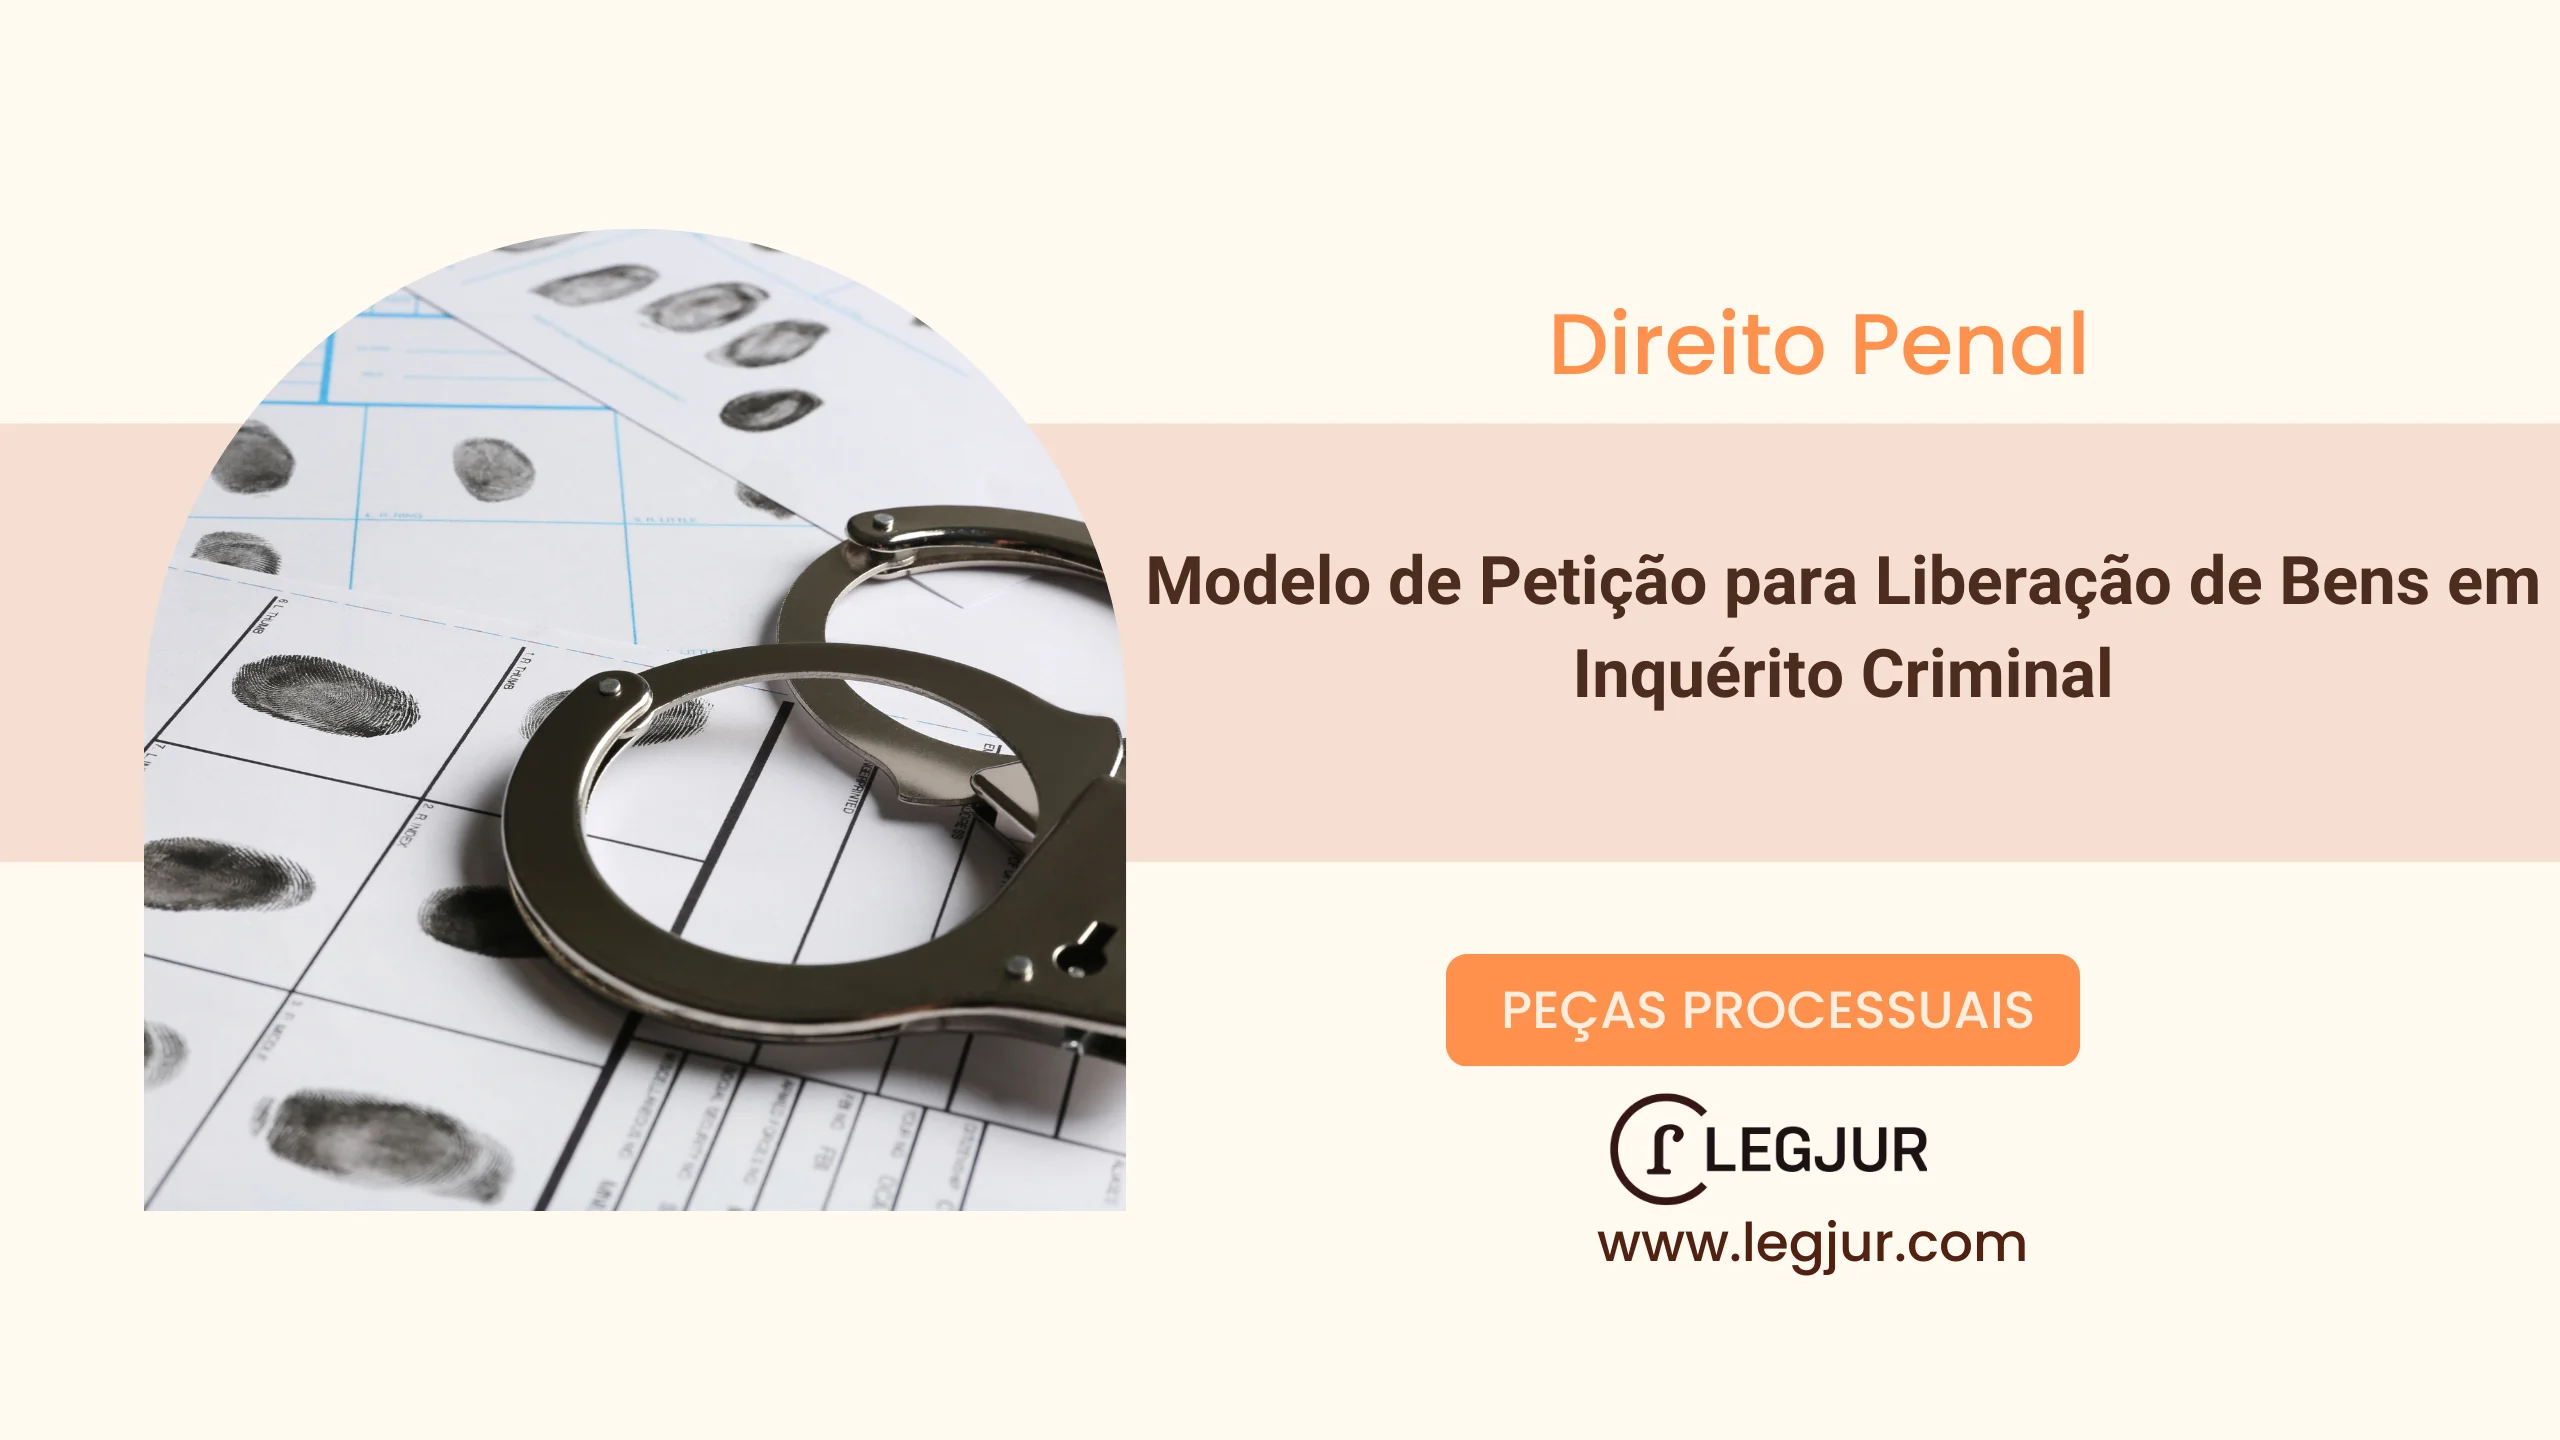 Modelo de Petição para Liberação de Bens em Inquérito Criminal